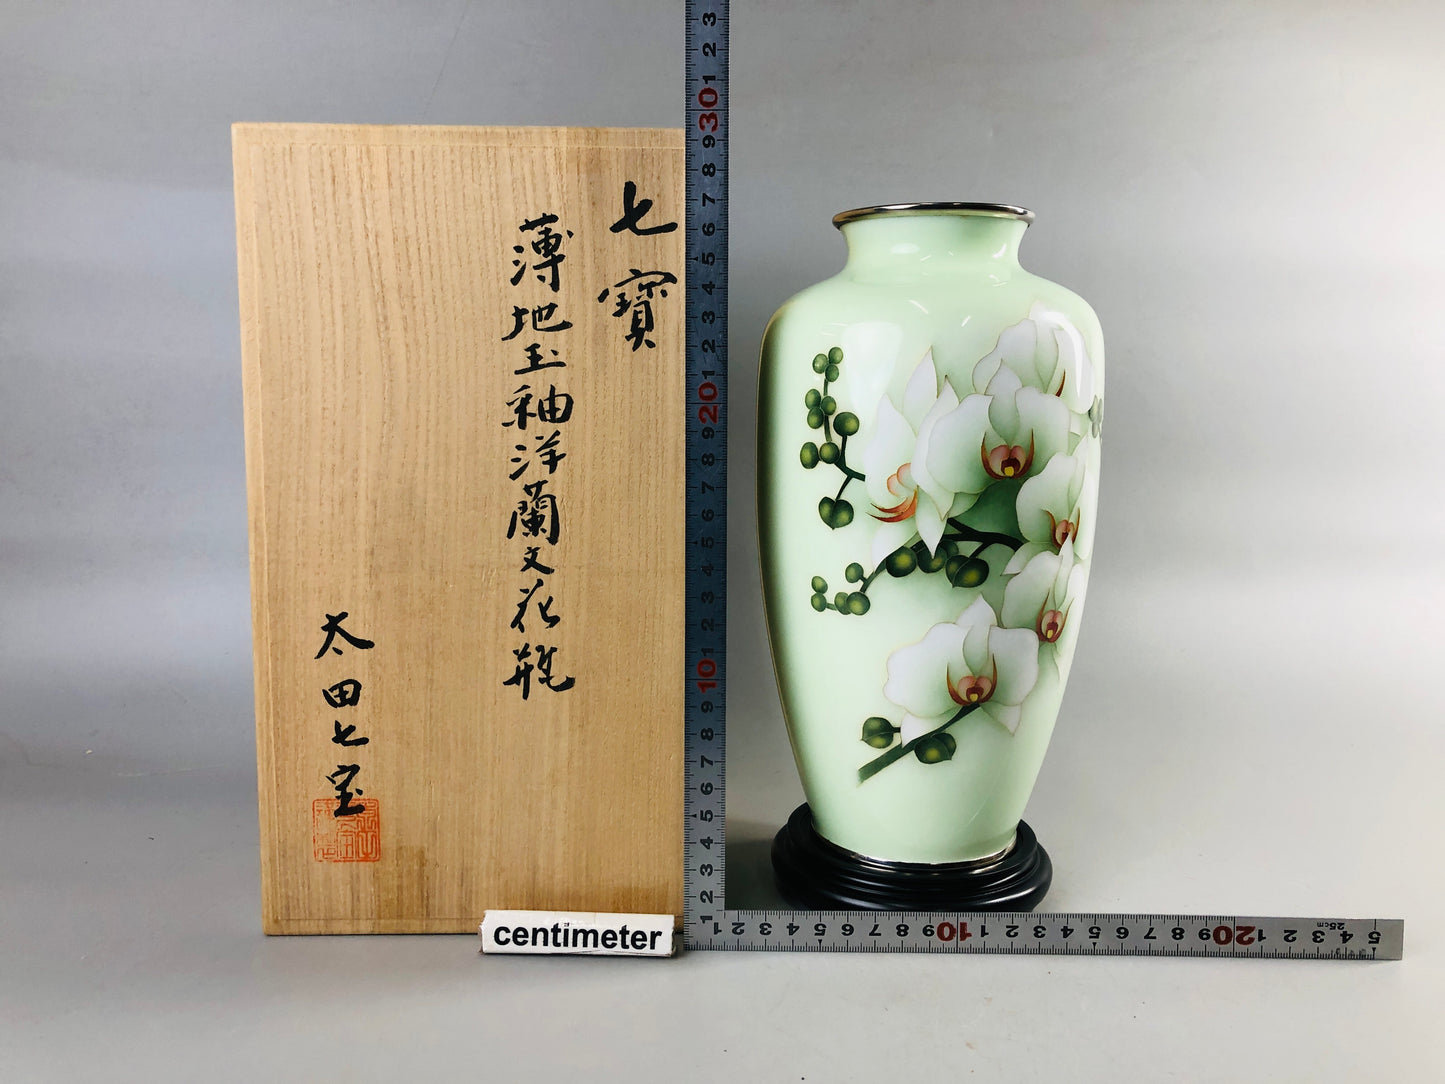 Y6947 「VIDEO] FLOWER VASE Cloisonne signed box Japan ikebana floral arrangement interior